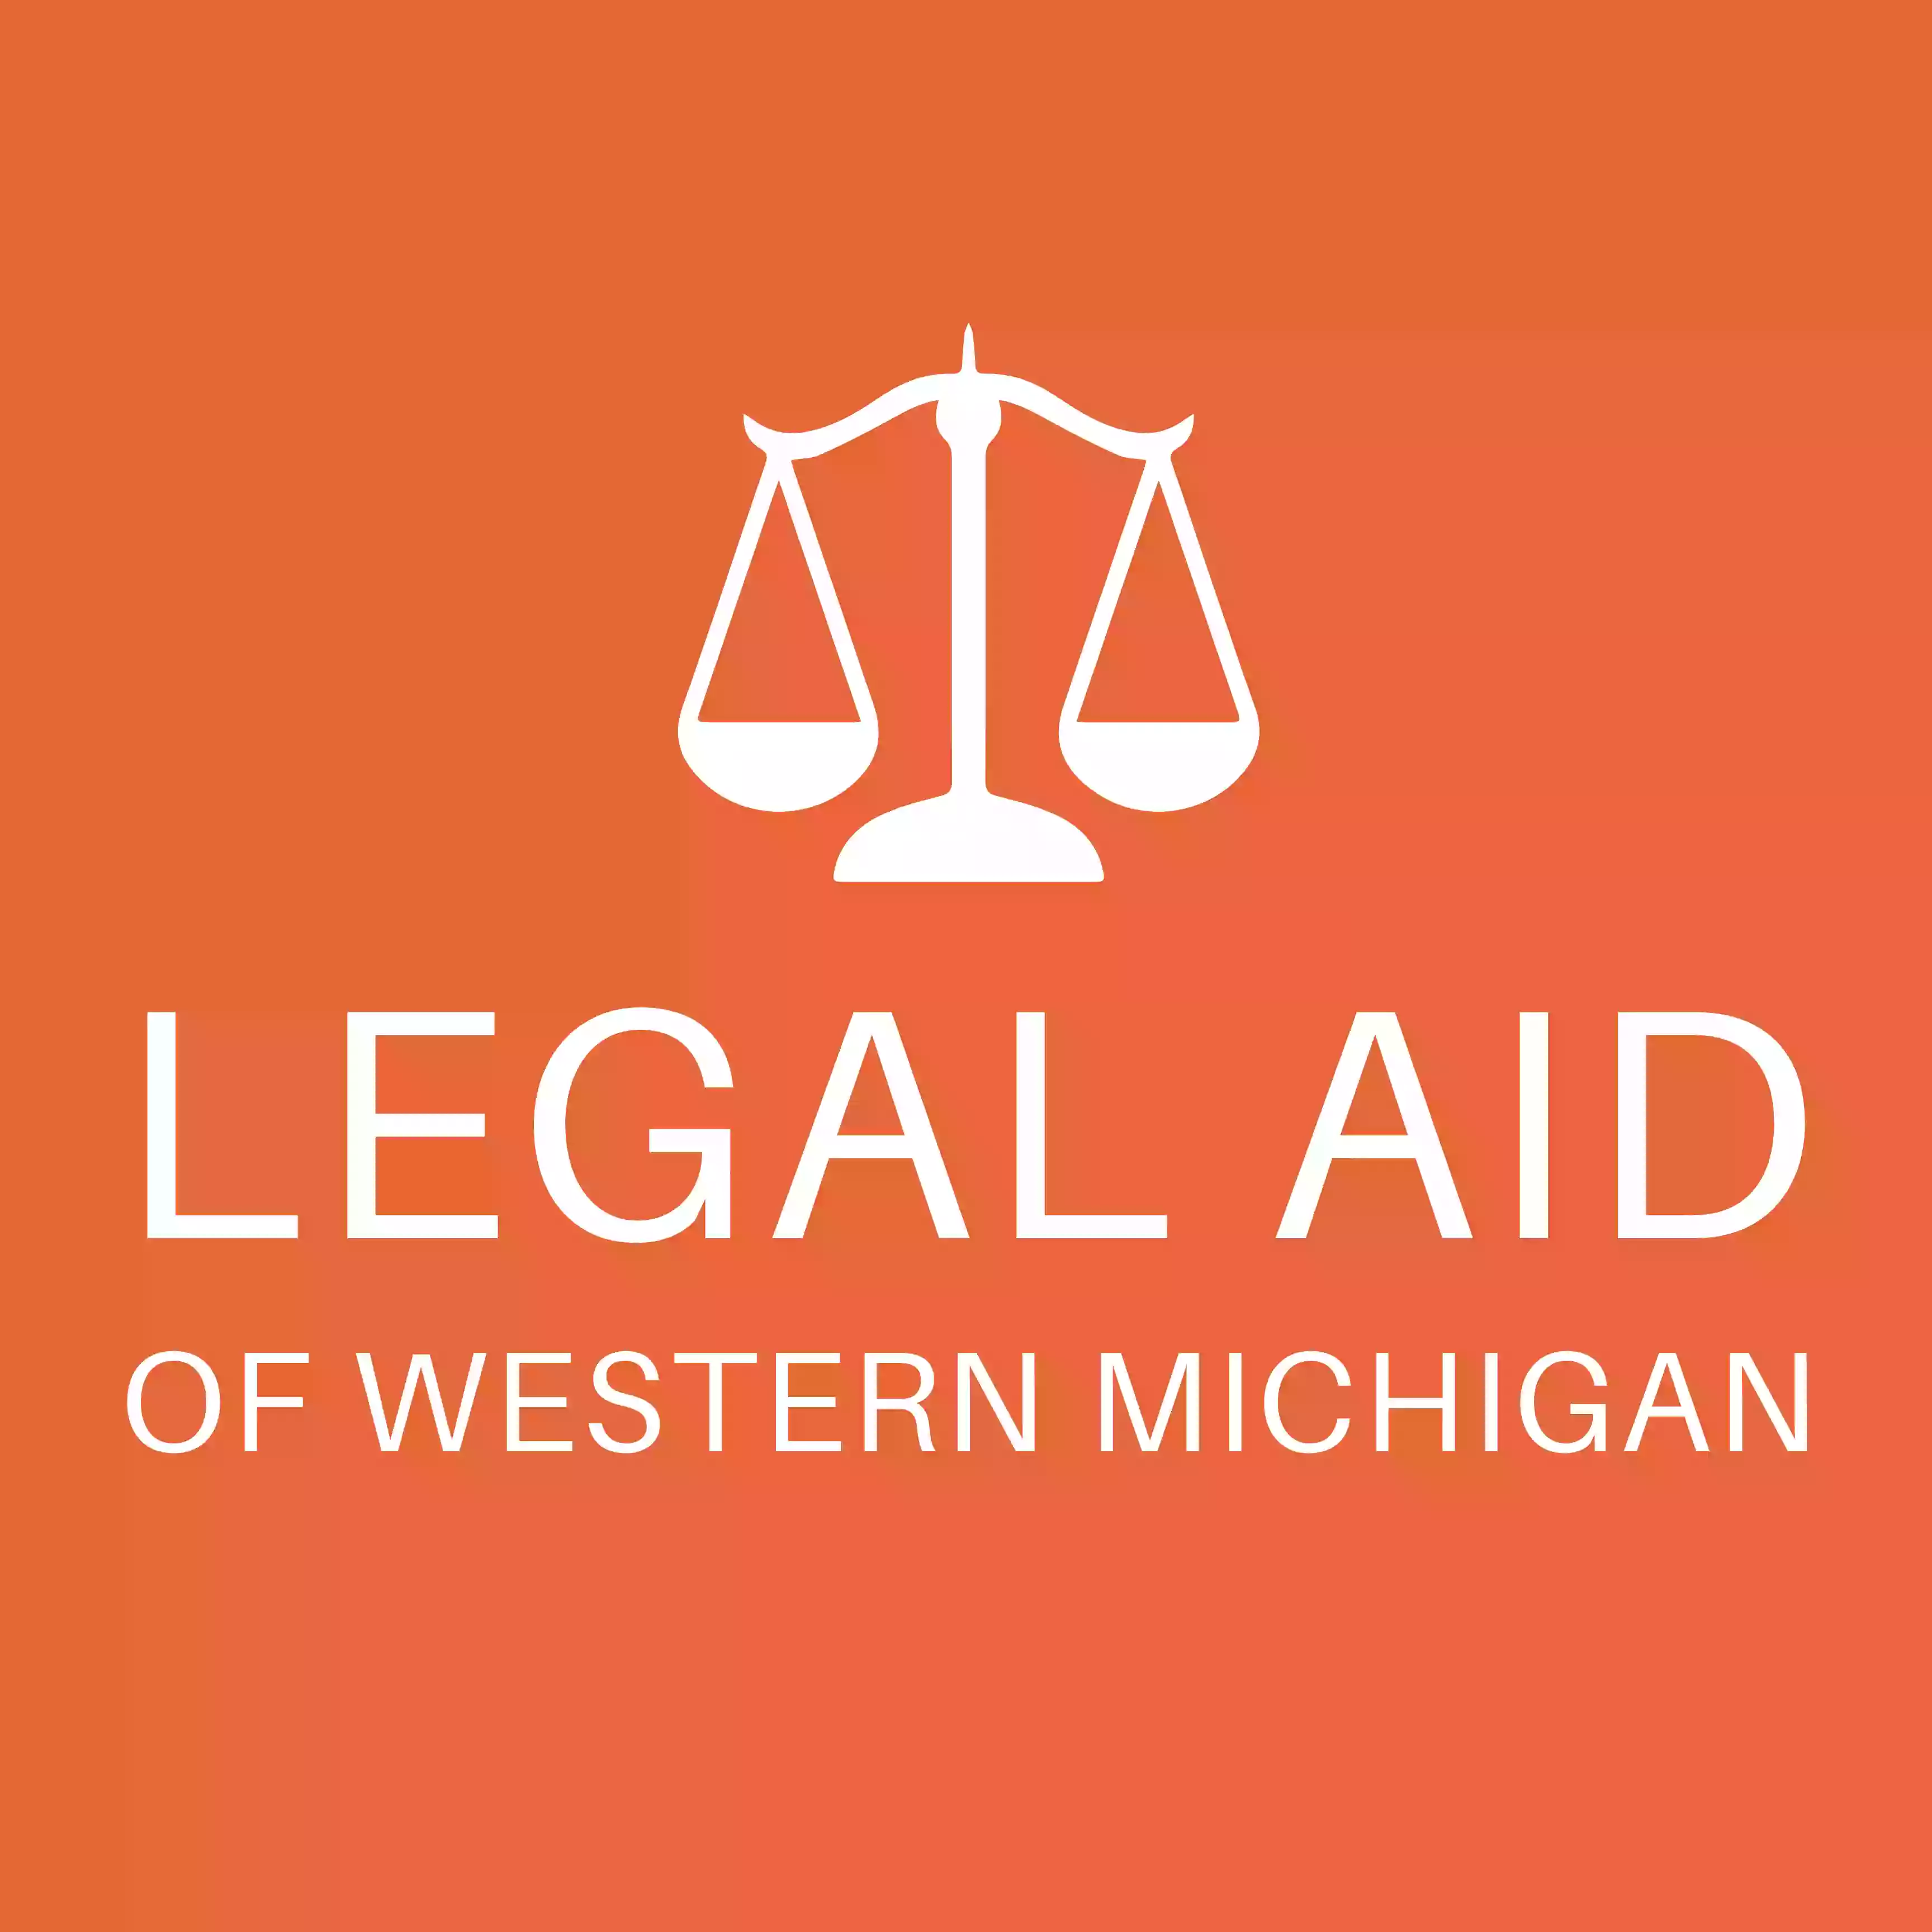 Legal Aid of Western Michigan